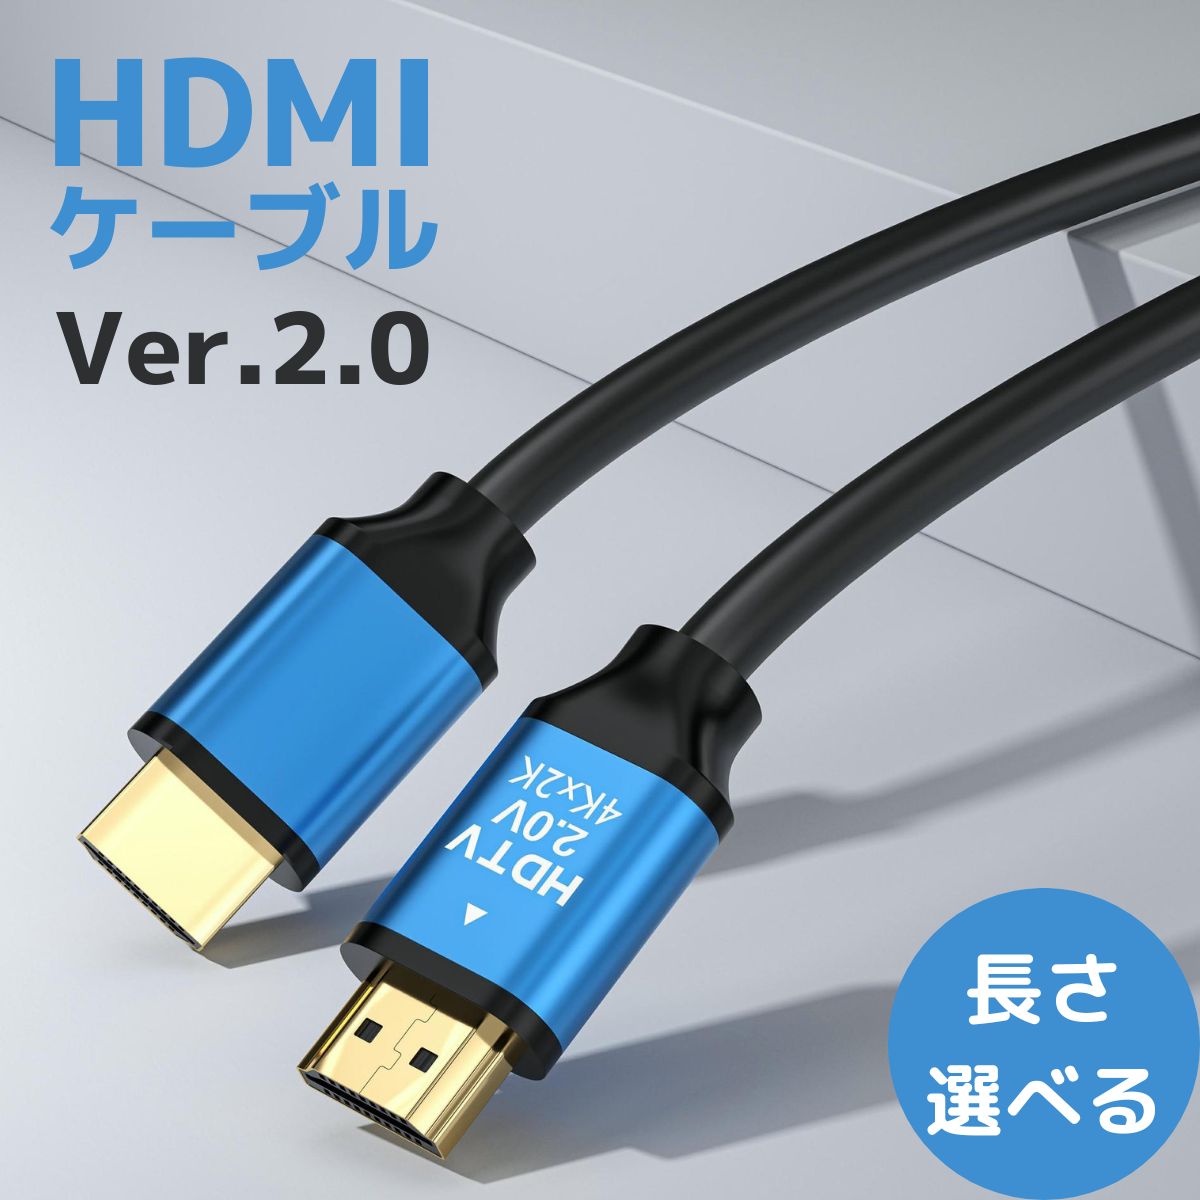 HDMIケーブル 0.5m 1.2m 1.5m 2m 3m 5m 10m 15m 20m HDMI ケーブル ver 2.0 規格 AVケーブル ARC 4K 2k 2160P フルHD 1080p 60p 3D PS4 PS5 PC パソコン ディスプレイ switch 対応 バージョン 2.0 プレミアムハイスピード HDMI 19ピン 50 オス ARC ポート